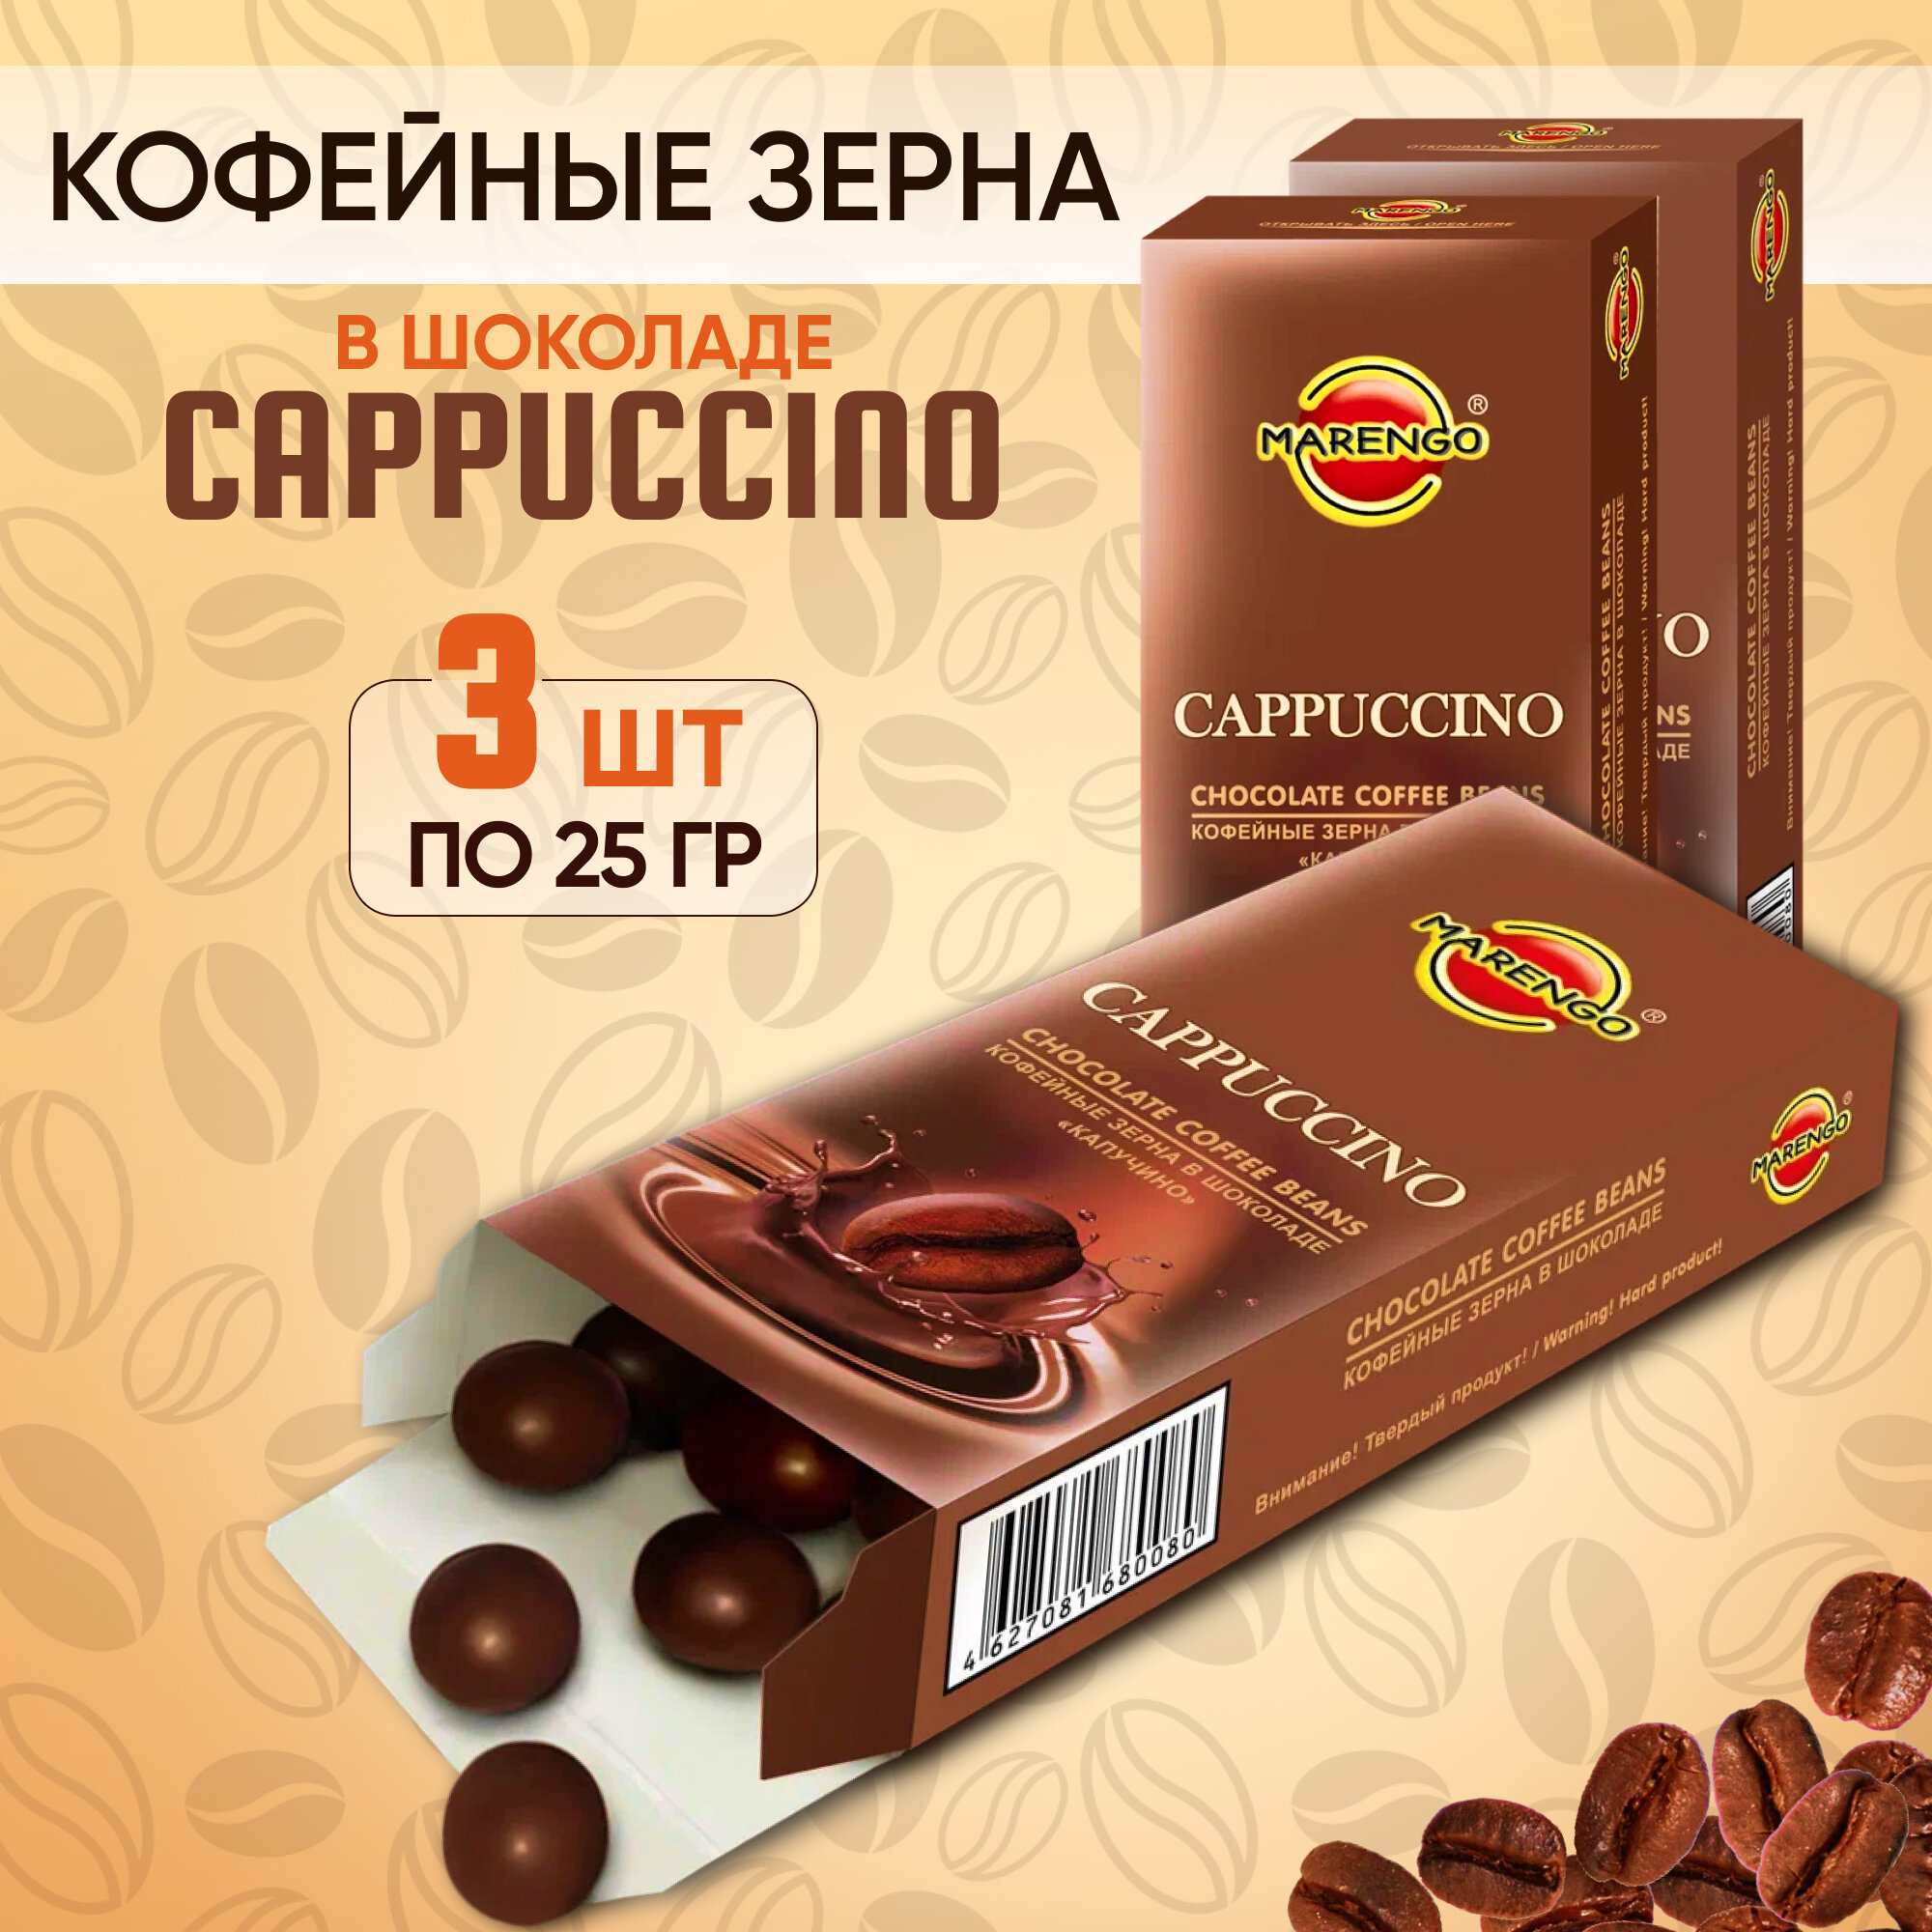 Кофейные зерна в шоколаде /MARENGO/ Cappucino 3шт по 25г